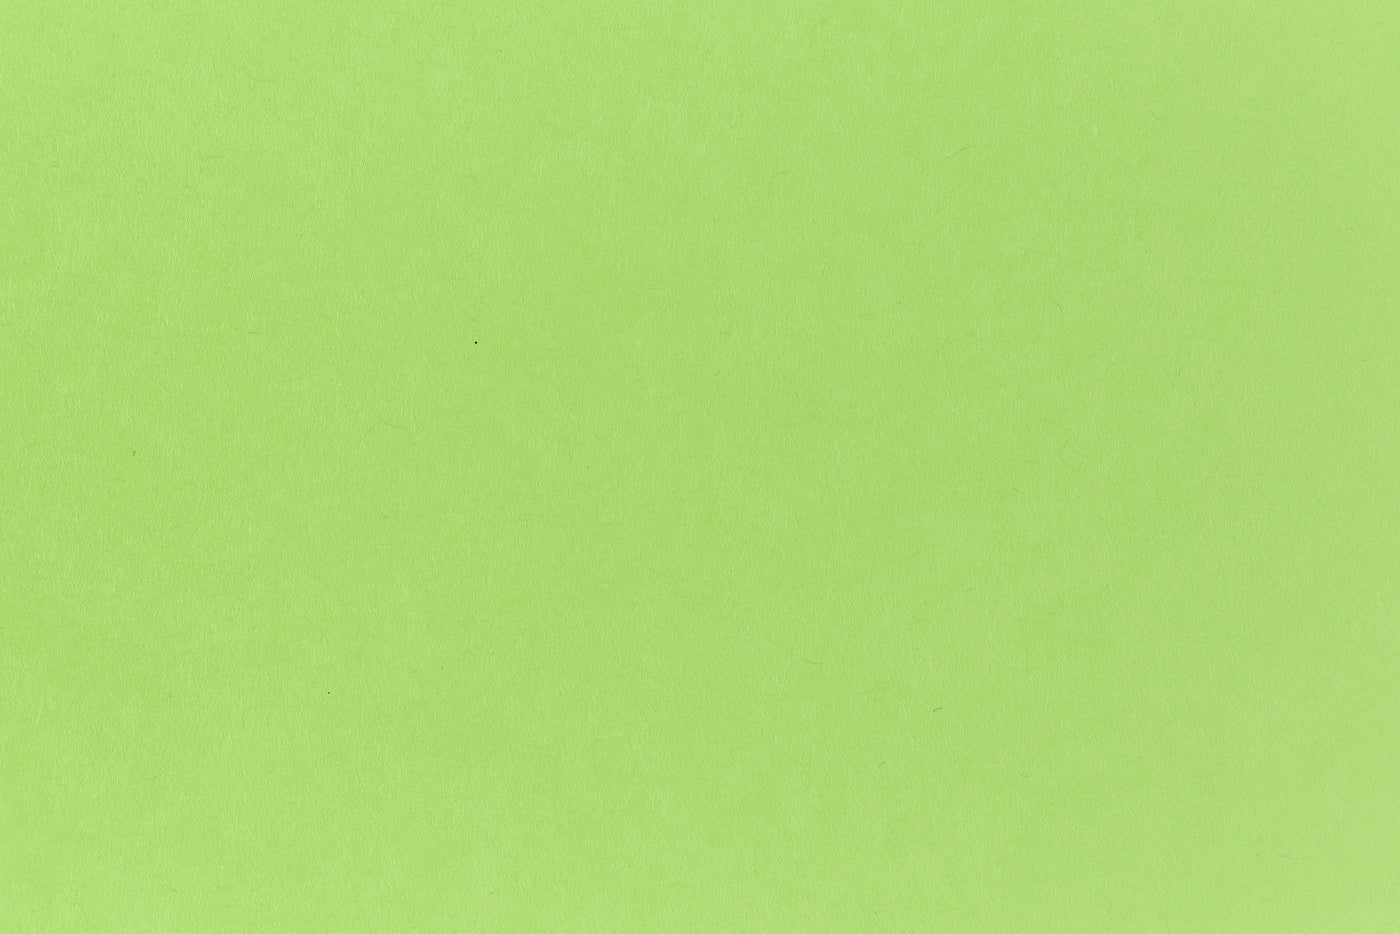 Shocking Green Envelope (Glo-Tone)